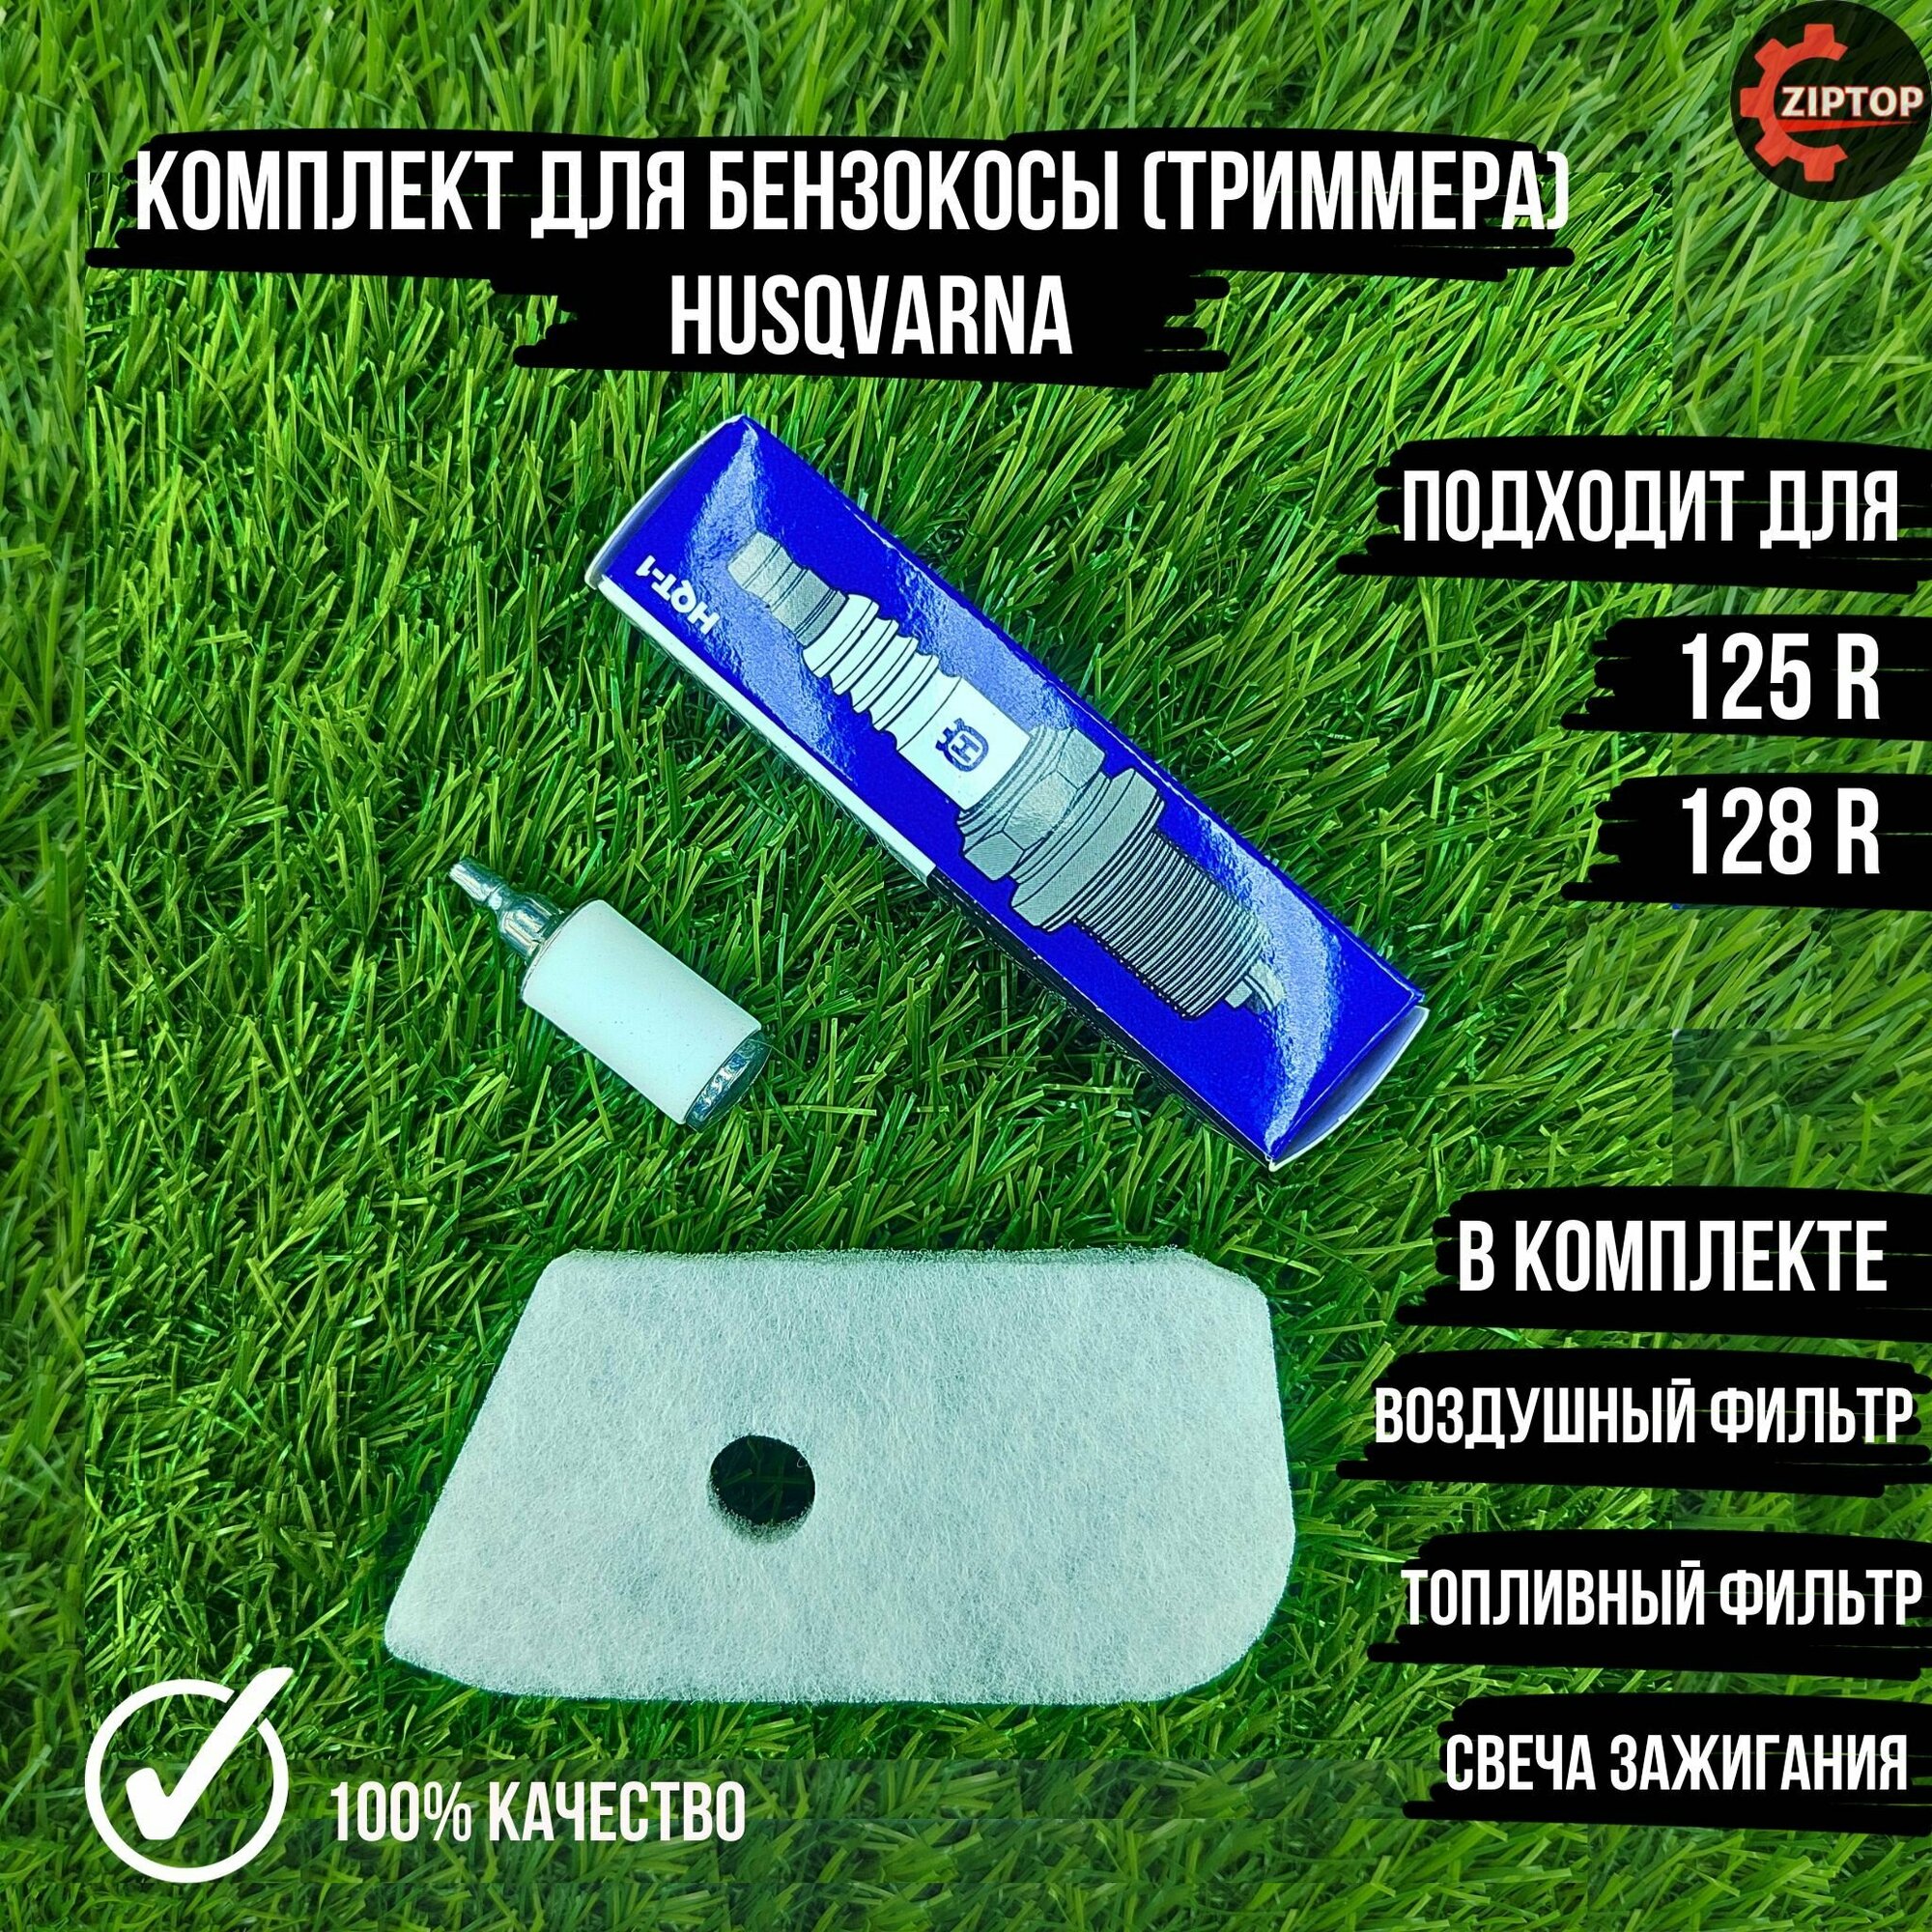 Комплект для бензокосы (триммера) Хускварна Husqvarna 125R, 128R (Воздушный фильтр, топливный фильтр, свеча зажигания)